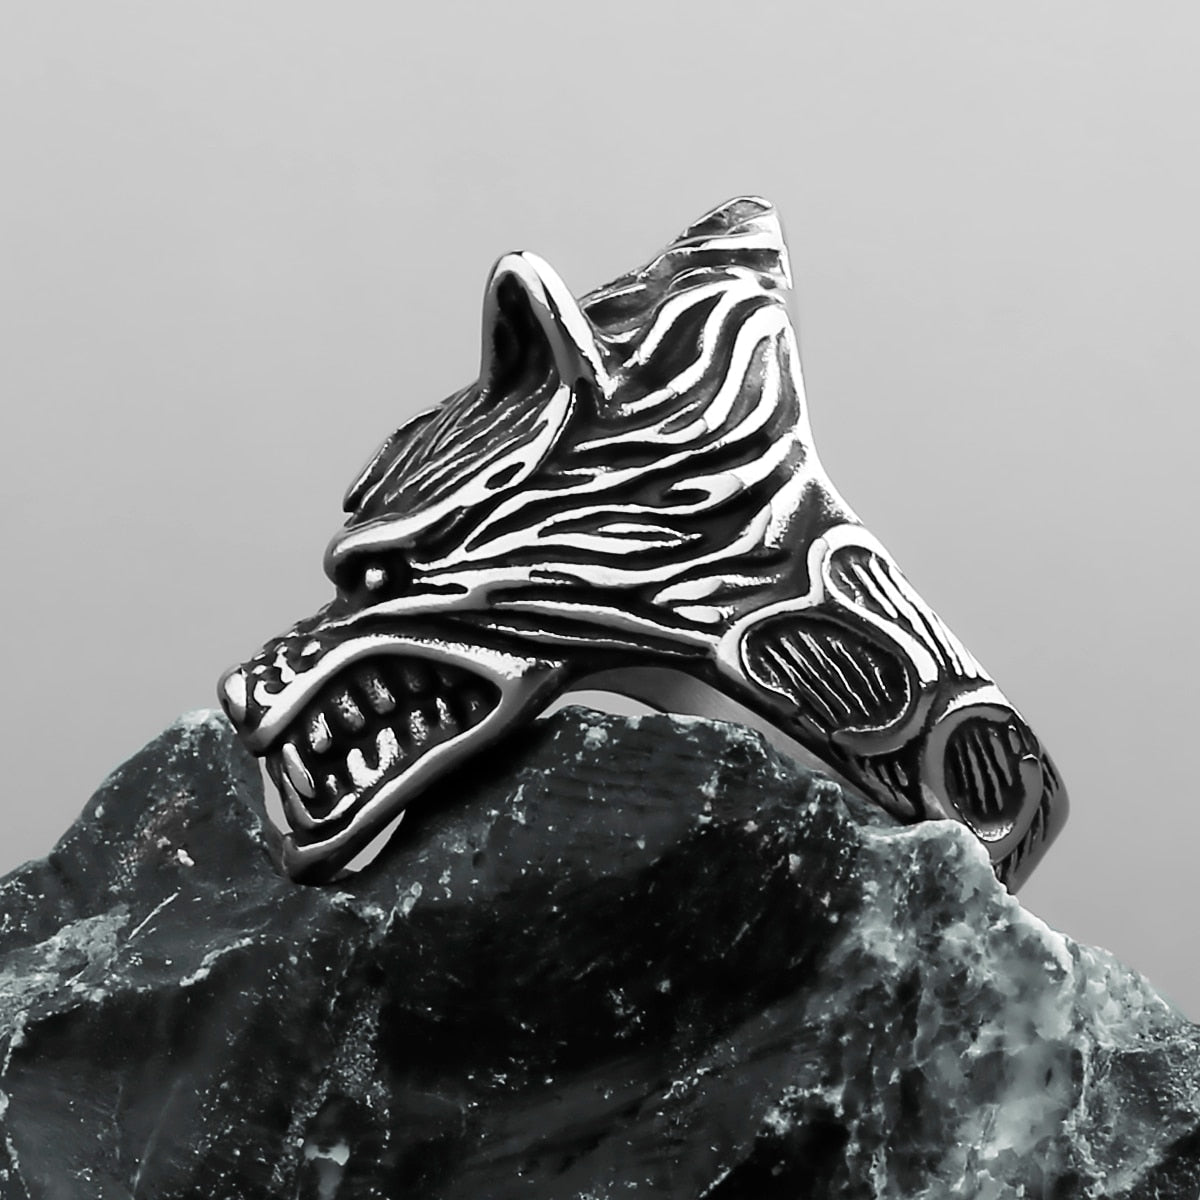 Norse Wolf Fenrir Head Ring